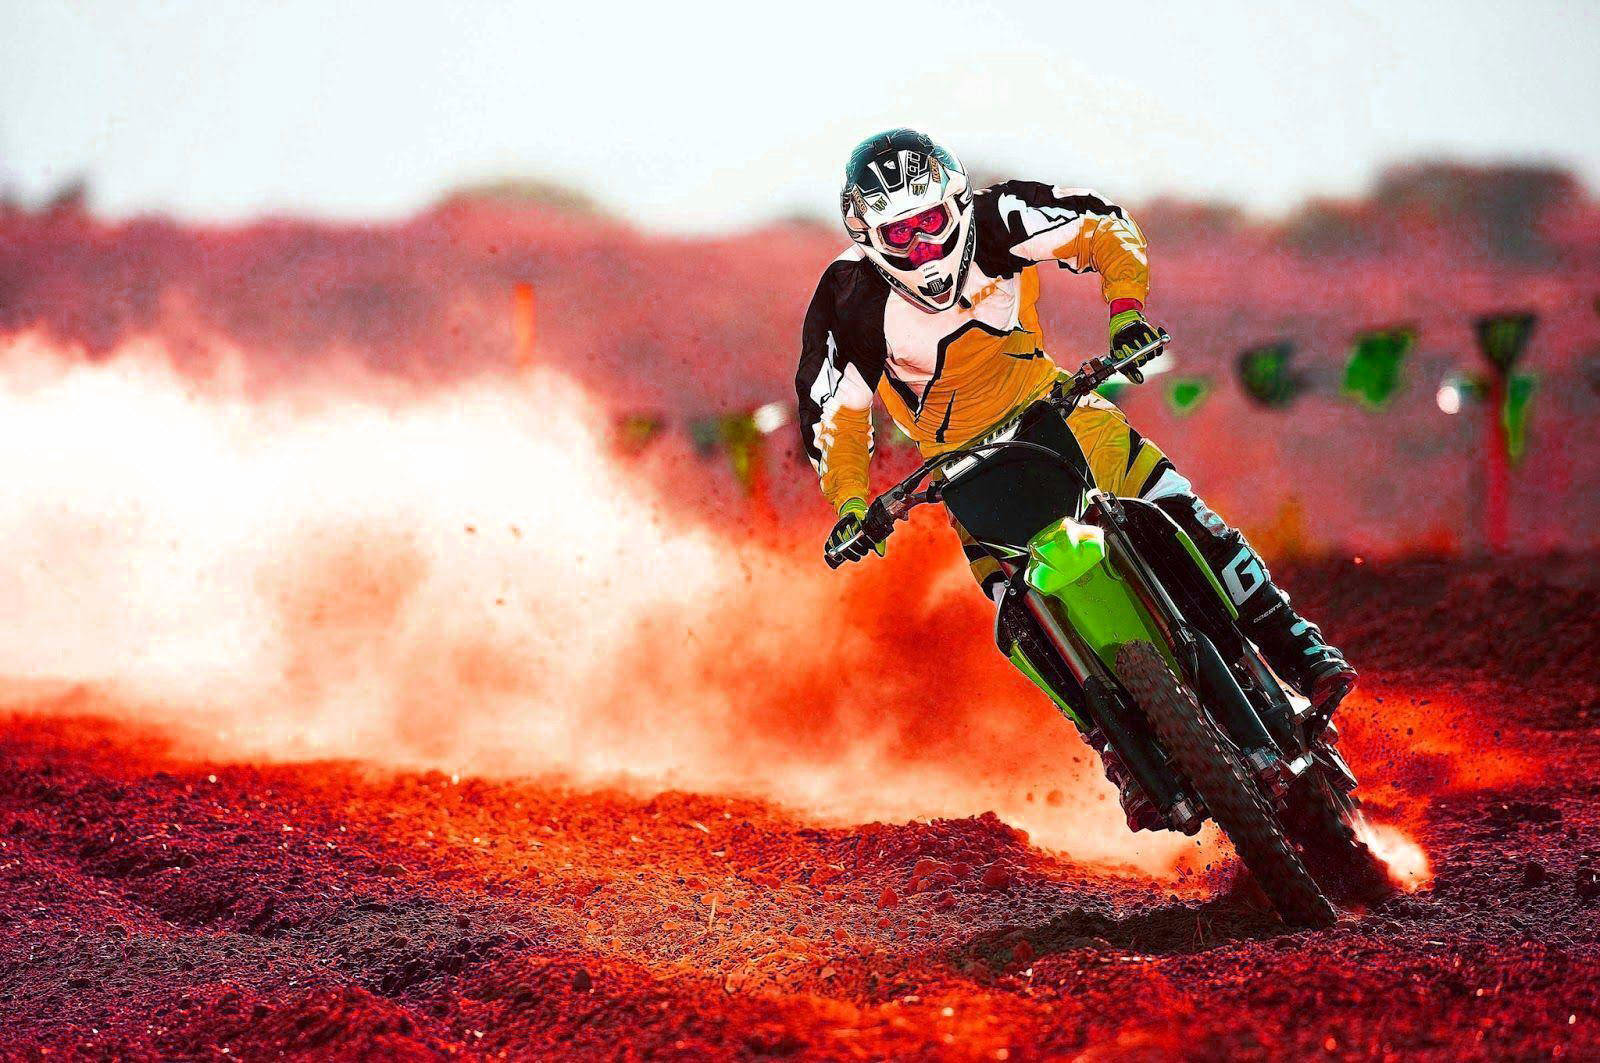 Eineperson Fährt Auf Einem Dirt-bike Über Ein Rotes Feld. Wallpaper